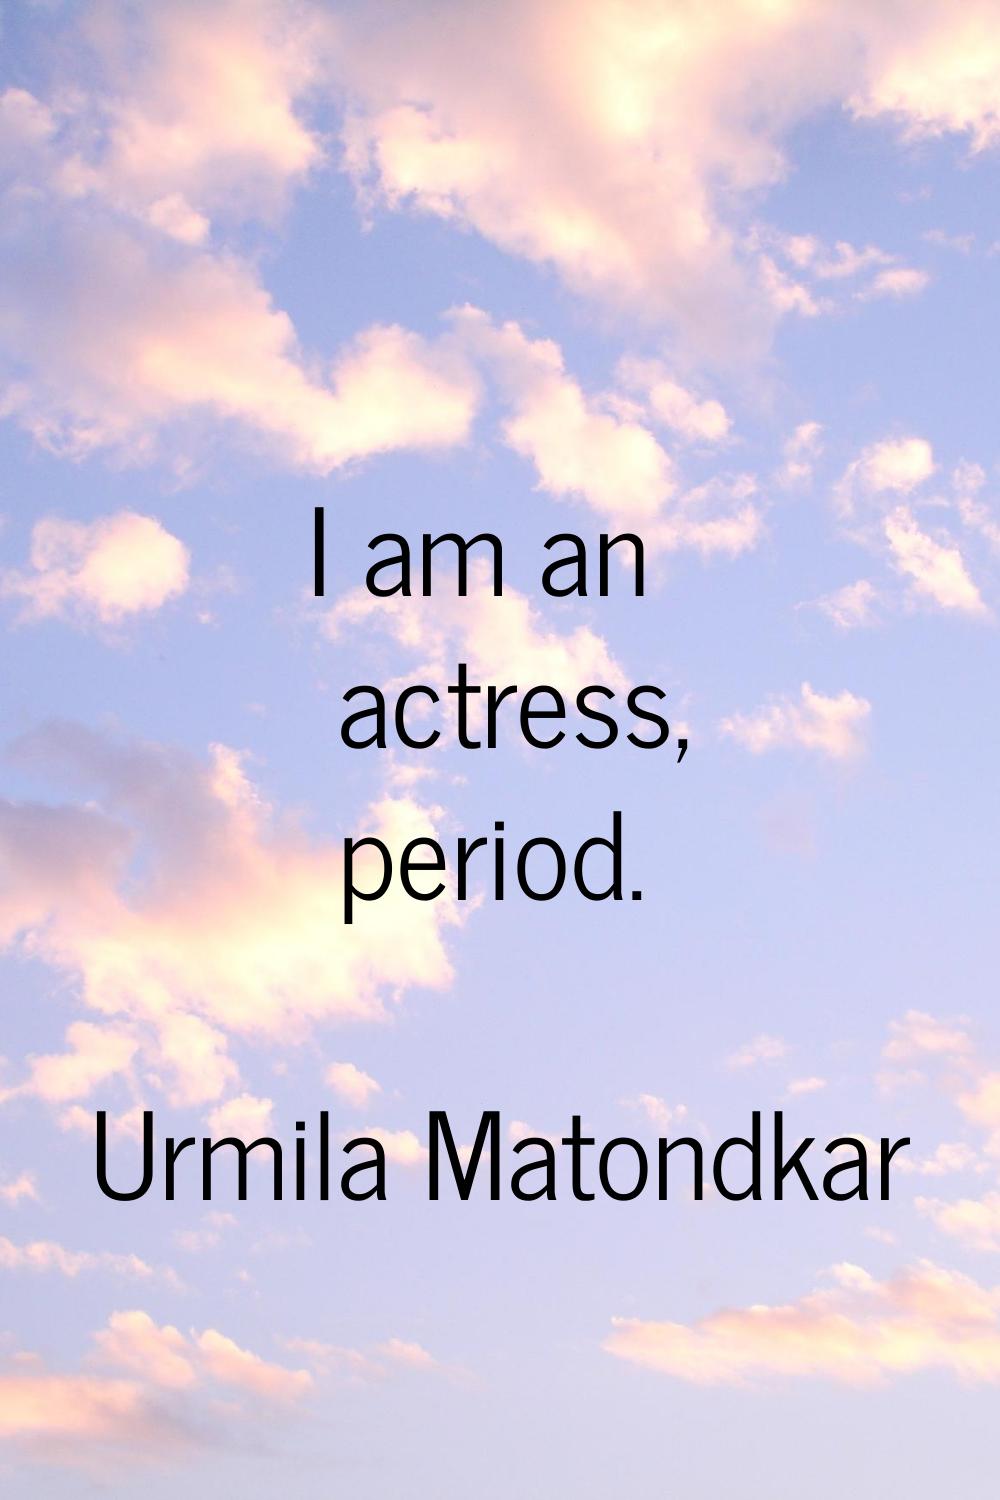 I am an actress, period.